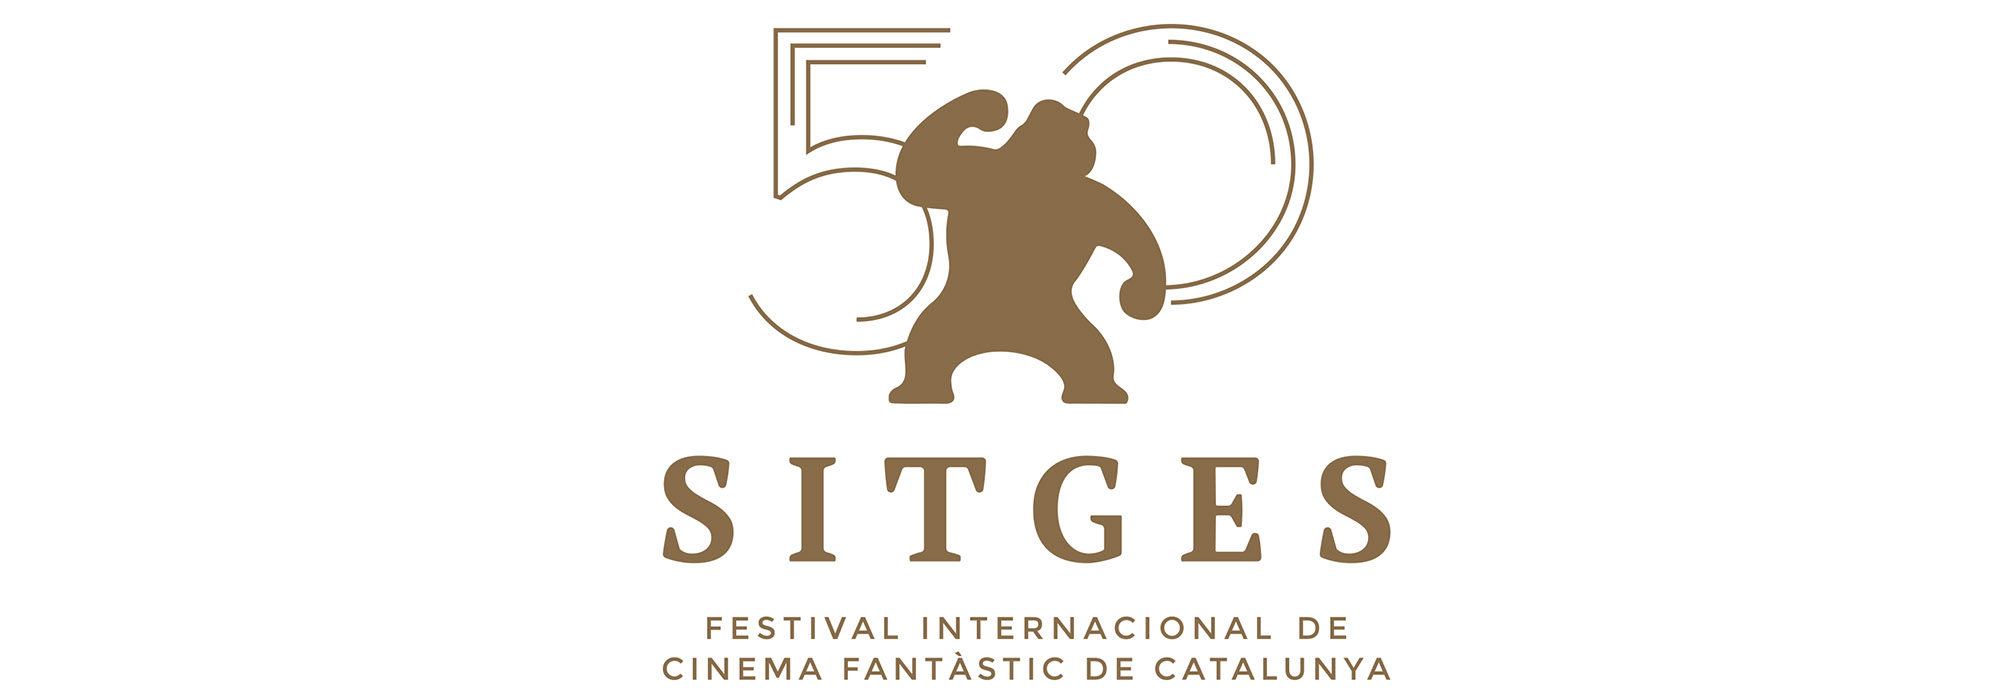 Palmarés de Sitges 2017